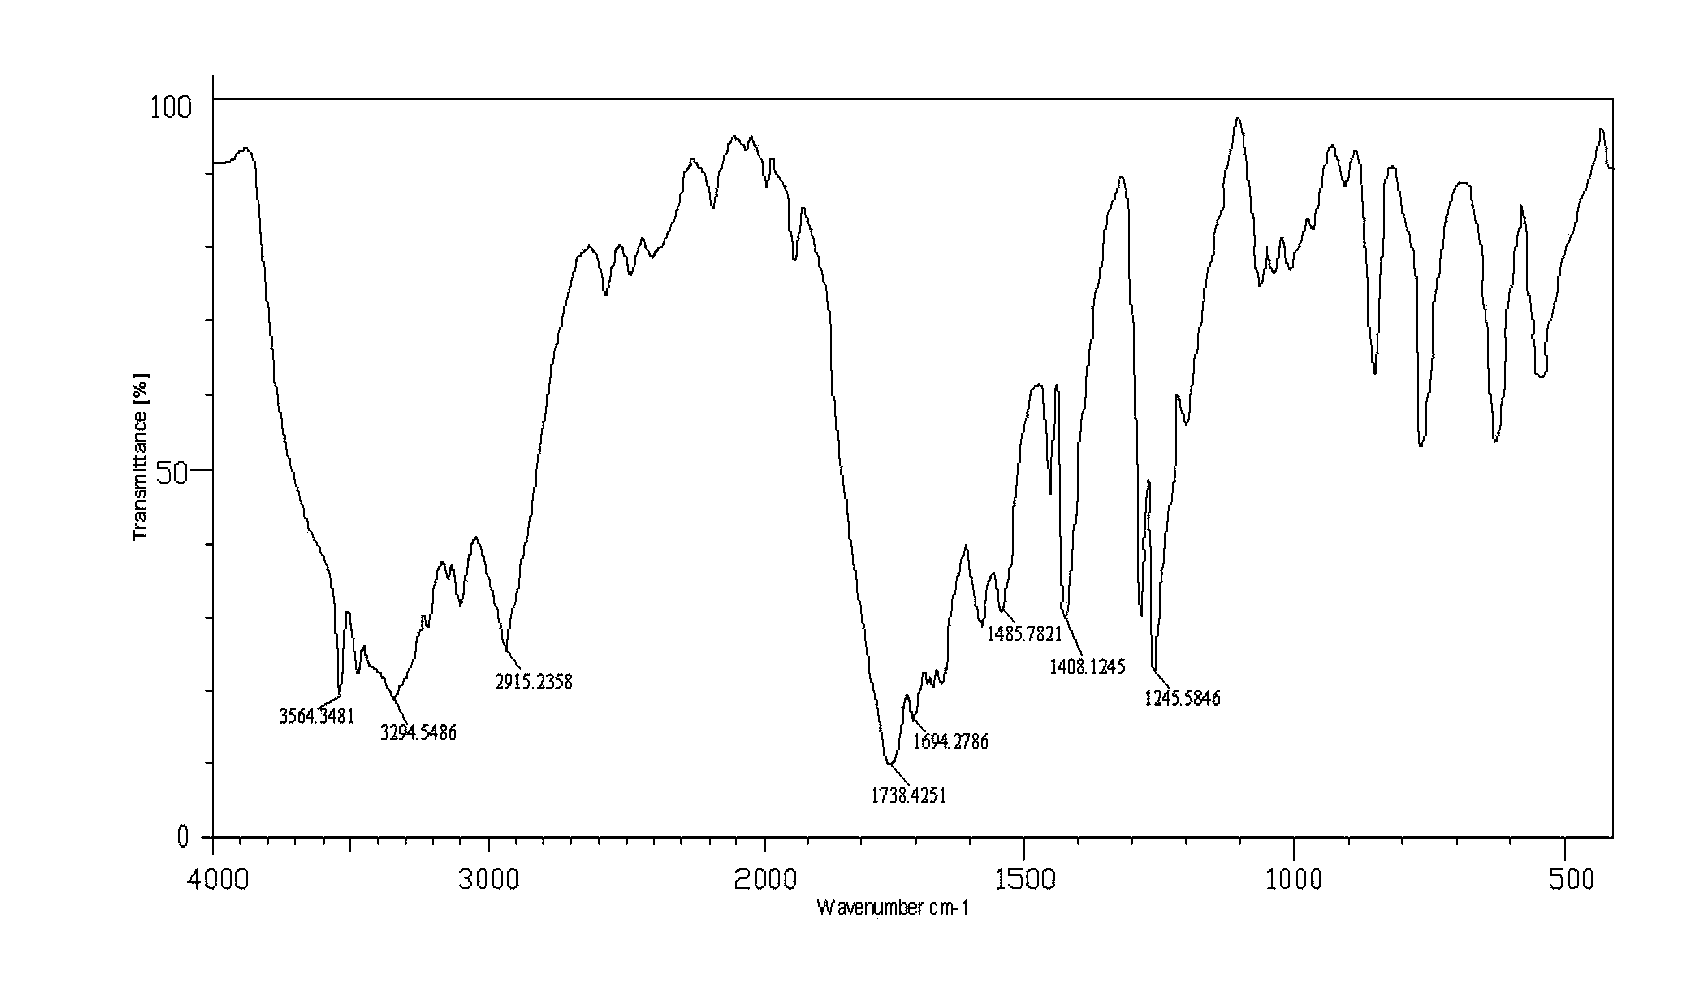 Barium-strontium scale inhibitor